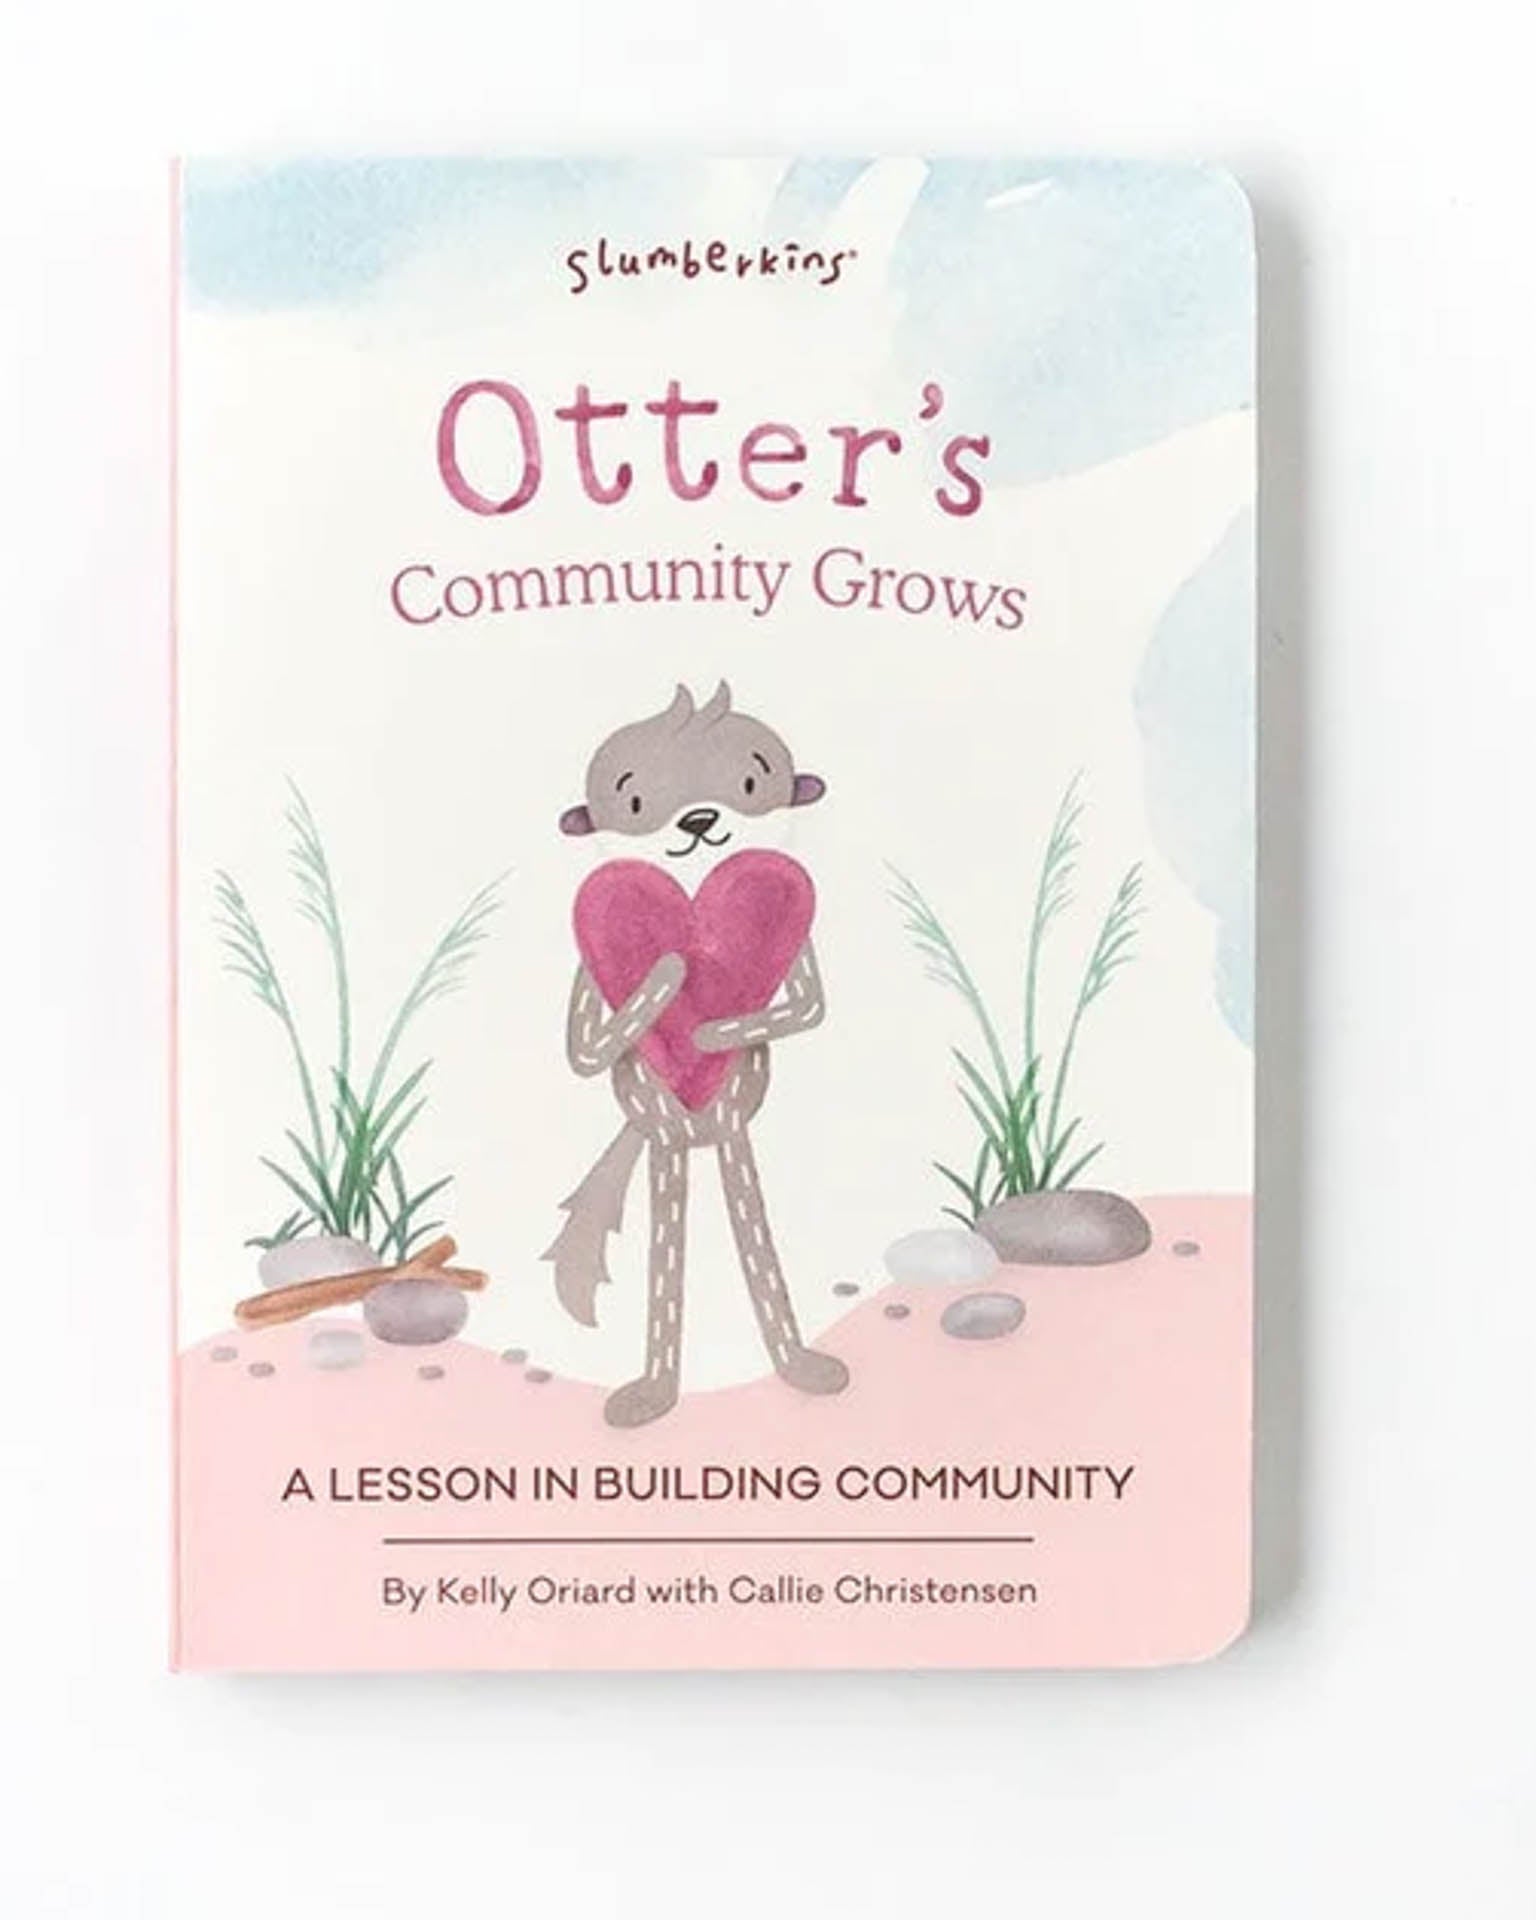 Little slumberkins play otter's community grows board book